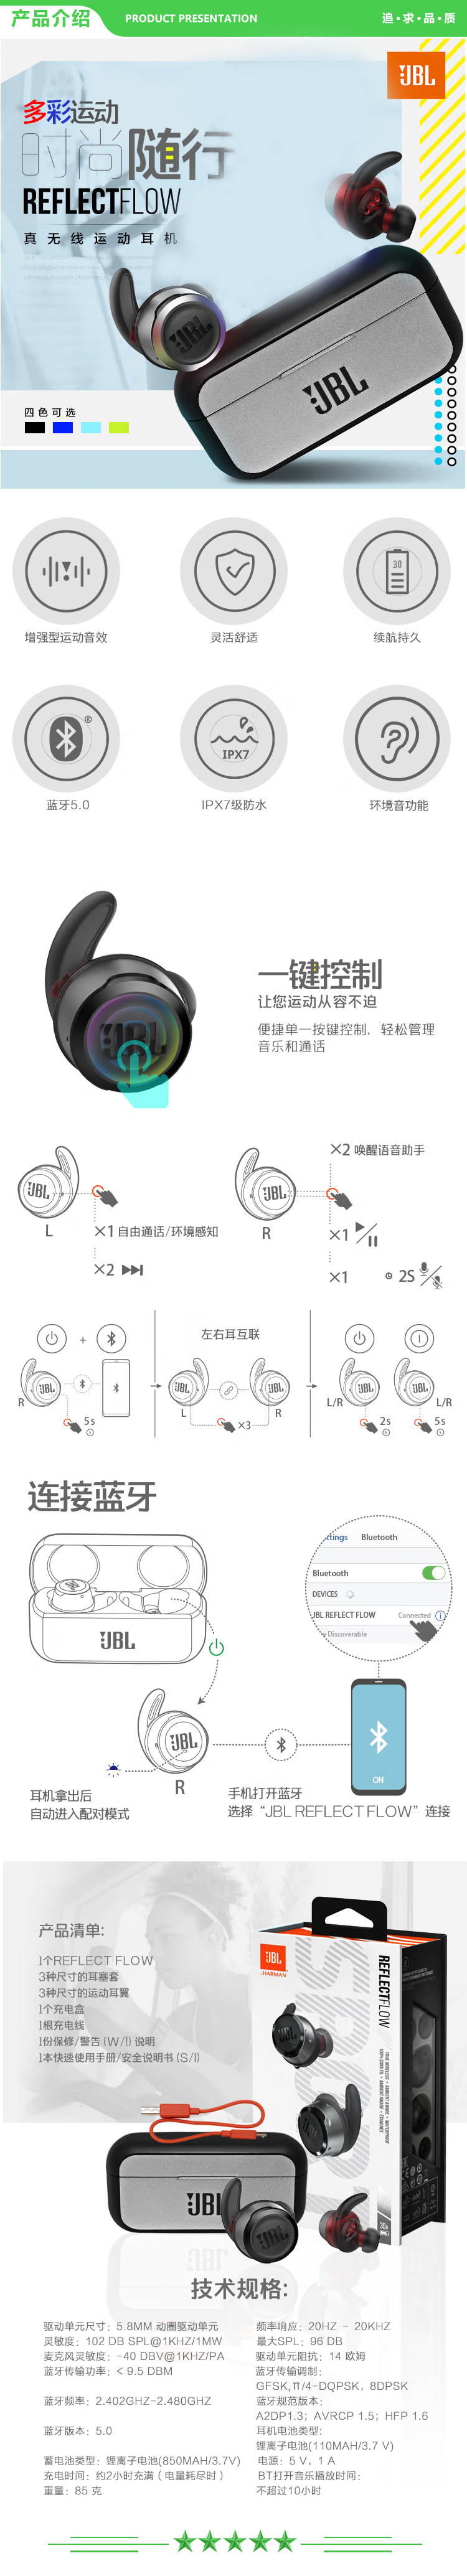 JBL FLOW蓝色 无线运动耳机 蓝牙耳机 真无线耳机 防水防汗 苹果华为小米安卓游戏通用耳机耳麦 .jpg